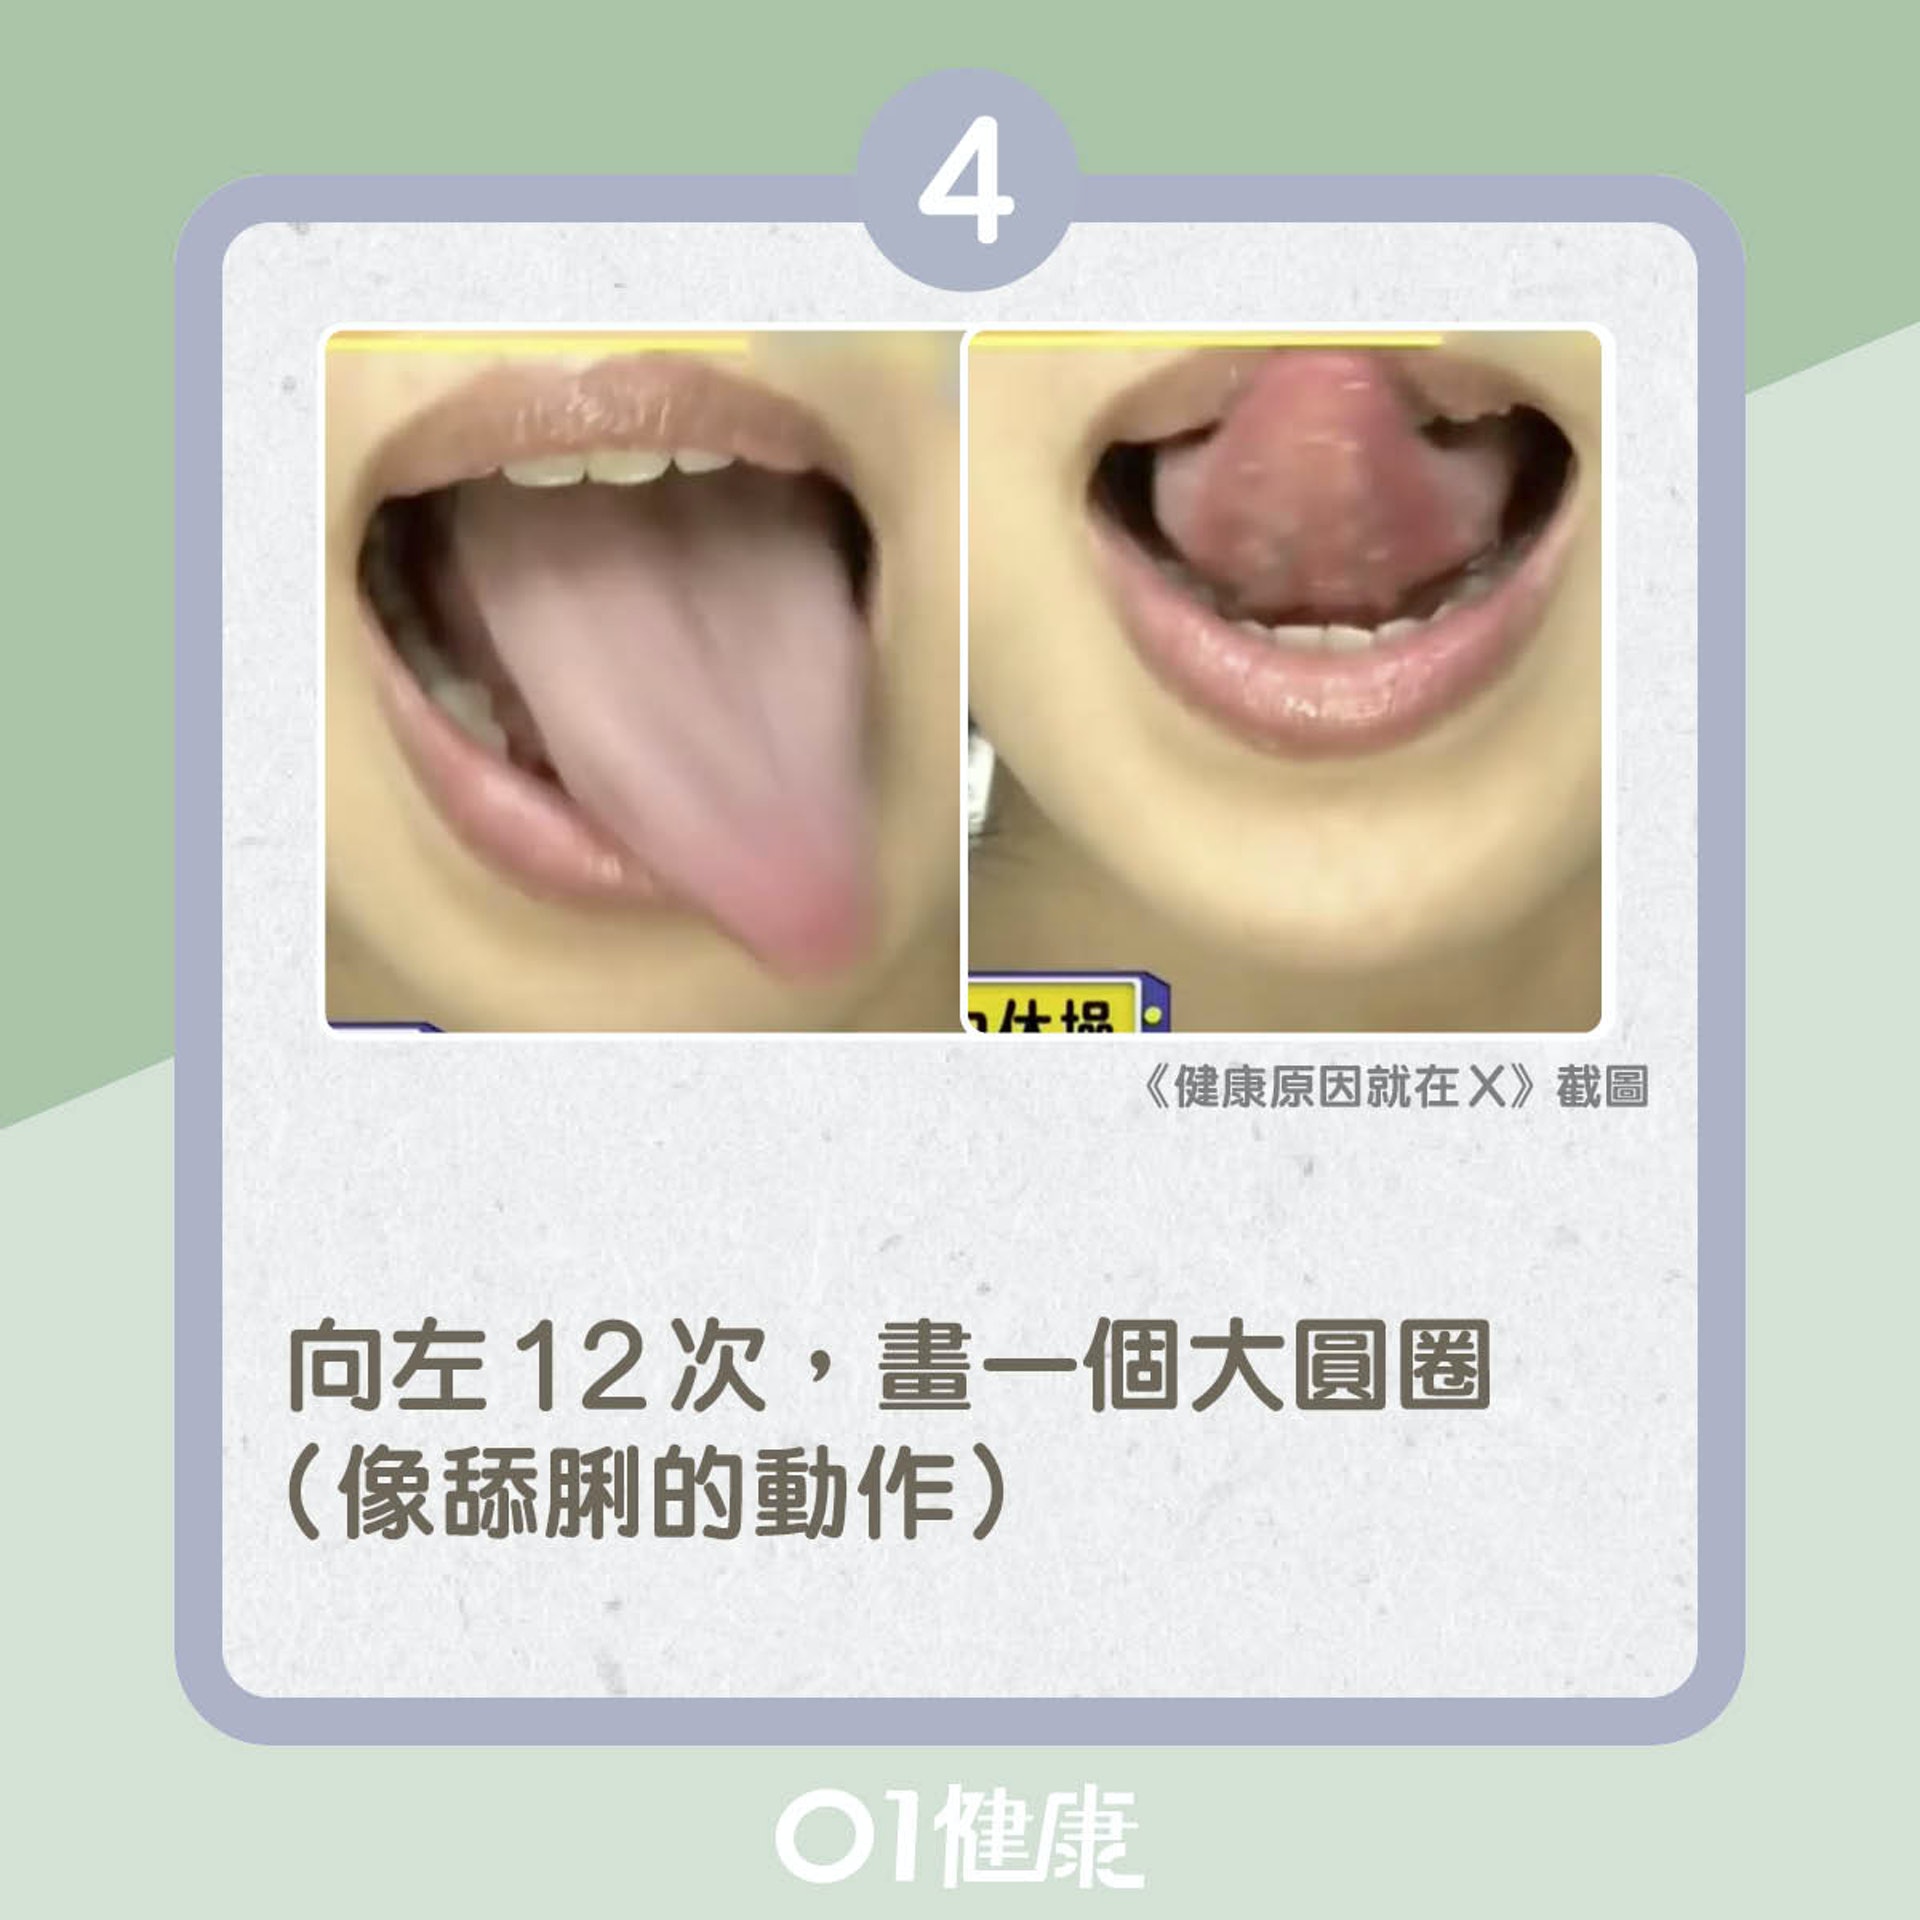 口部健康操（01製圖）